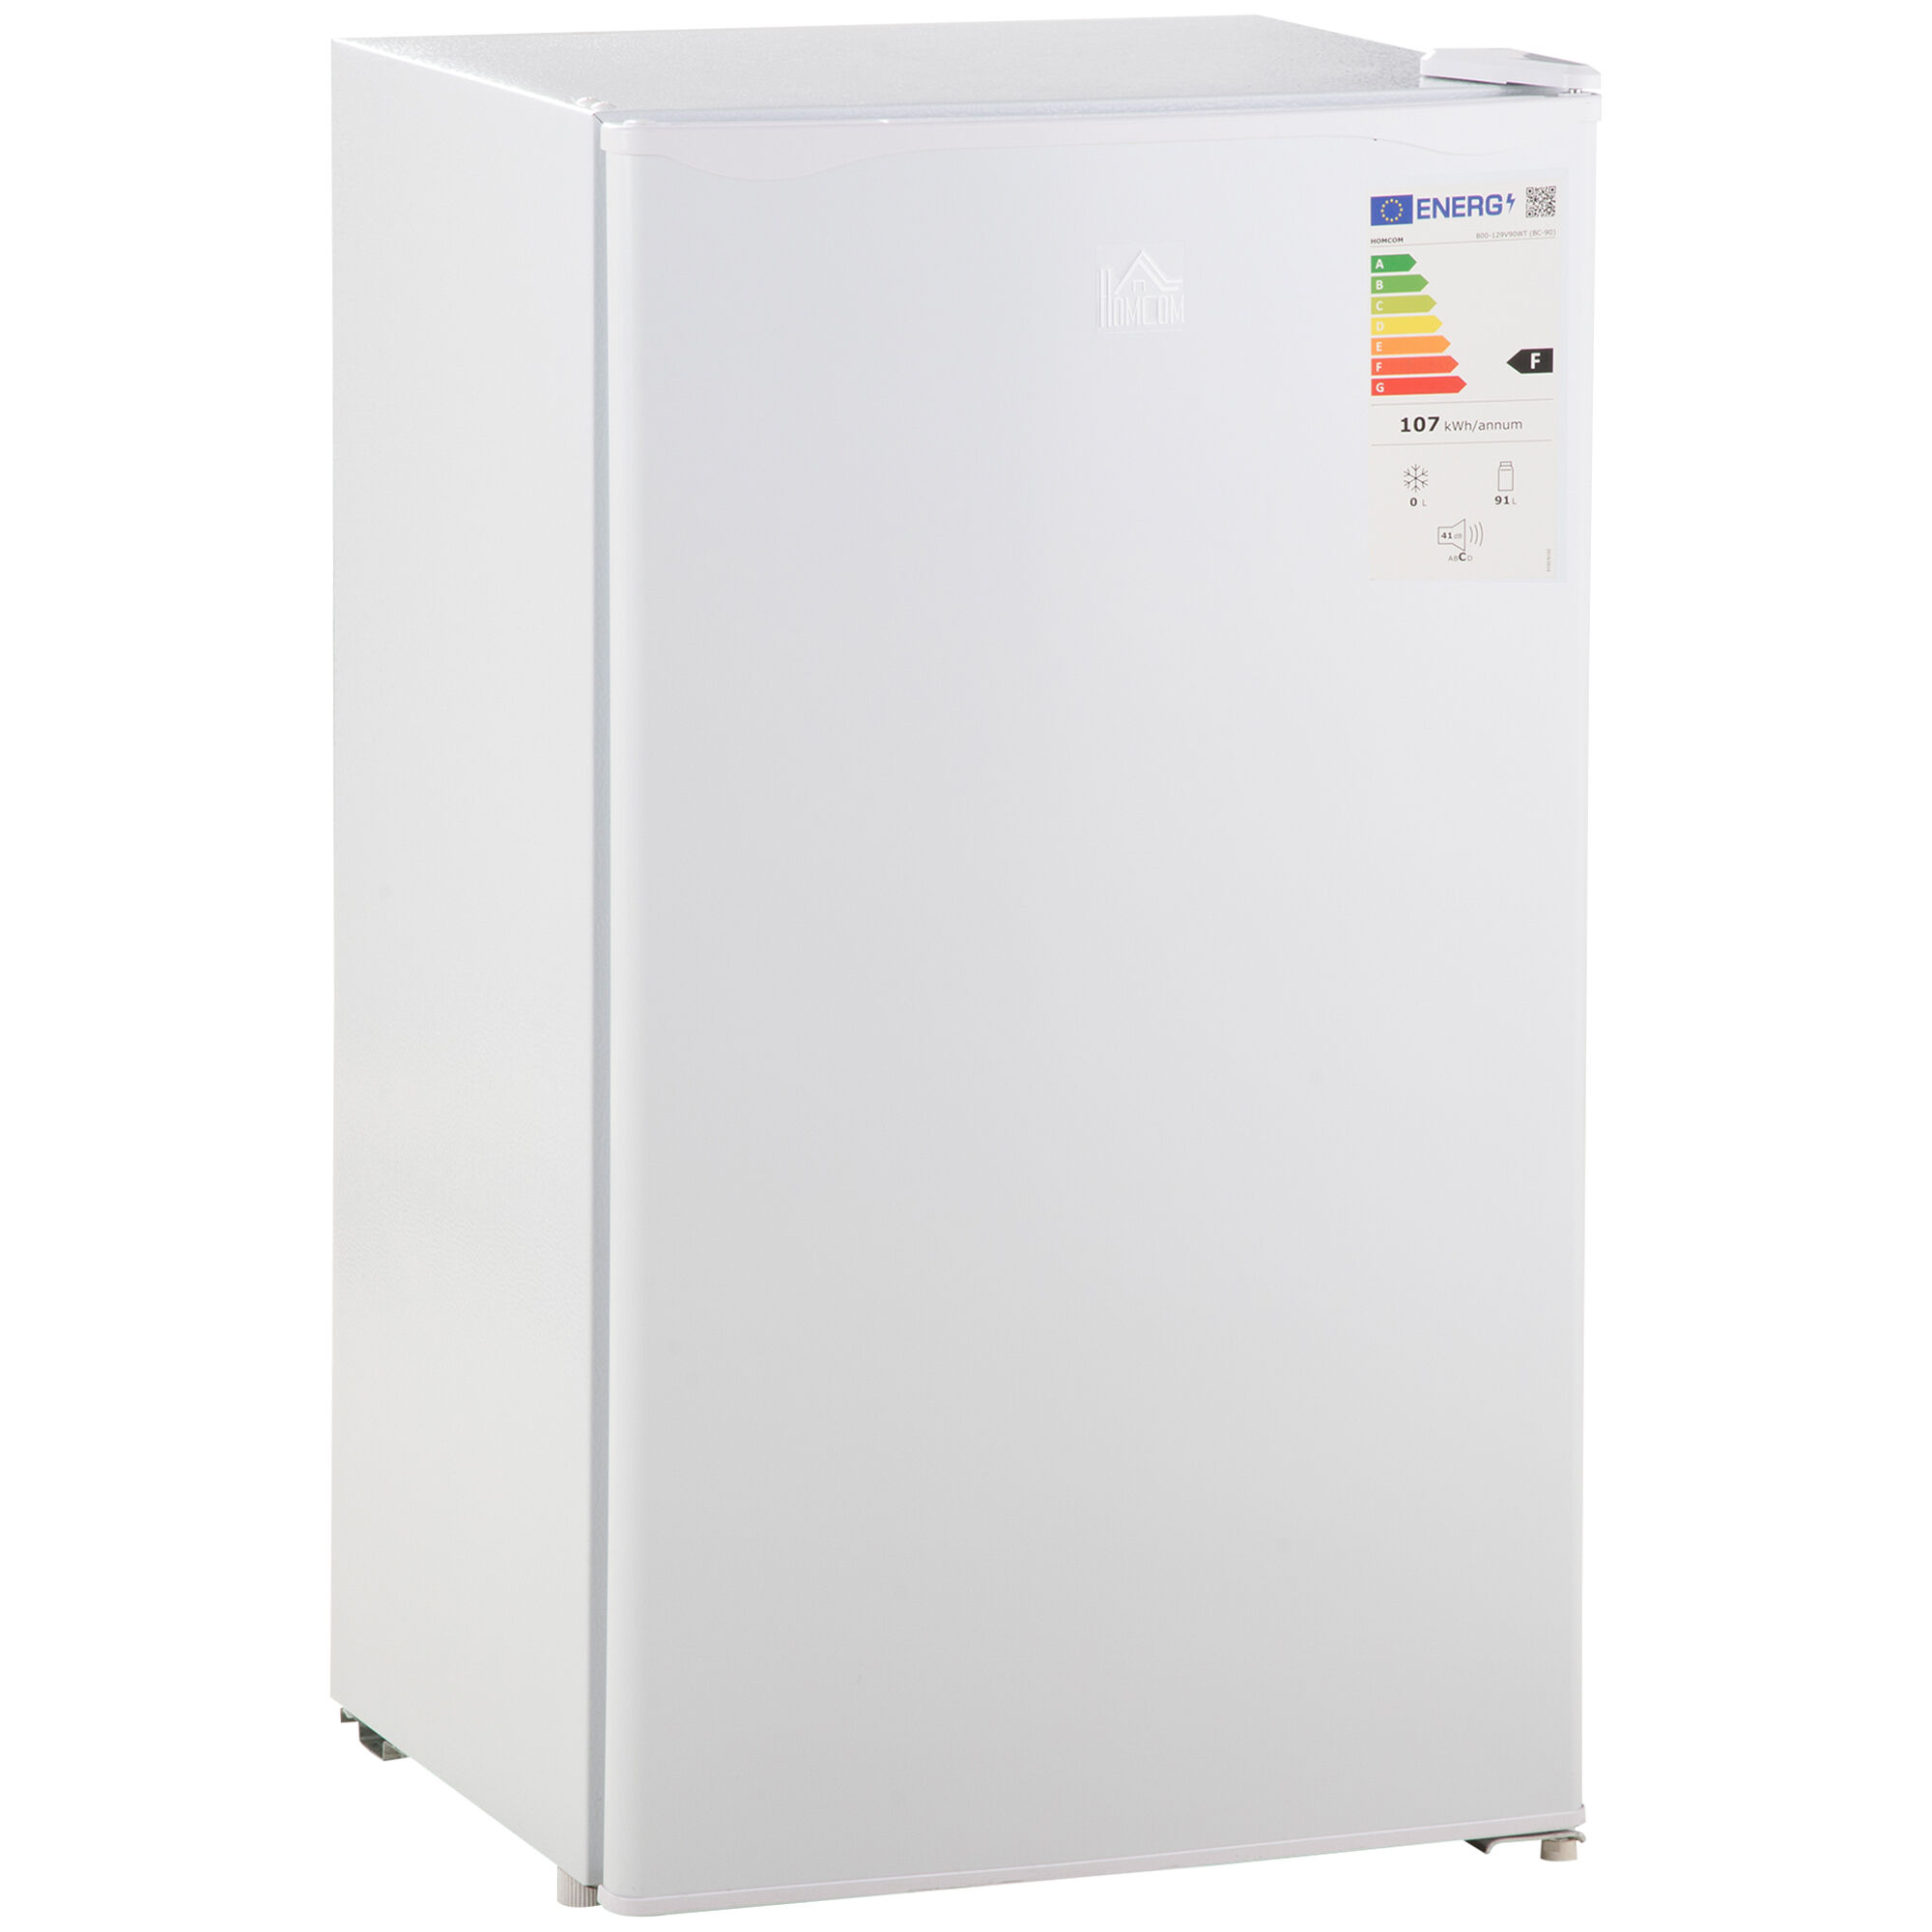 Homcom Mini Refrigerador 91L de Capacidad Nevera Eléctrica Pequeña con Estante Ajustable Compartimento Congelador y Puerta Reversible Silencioso